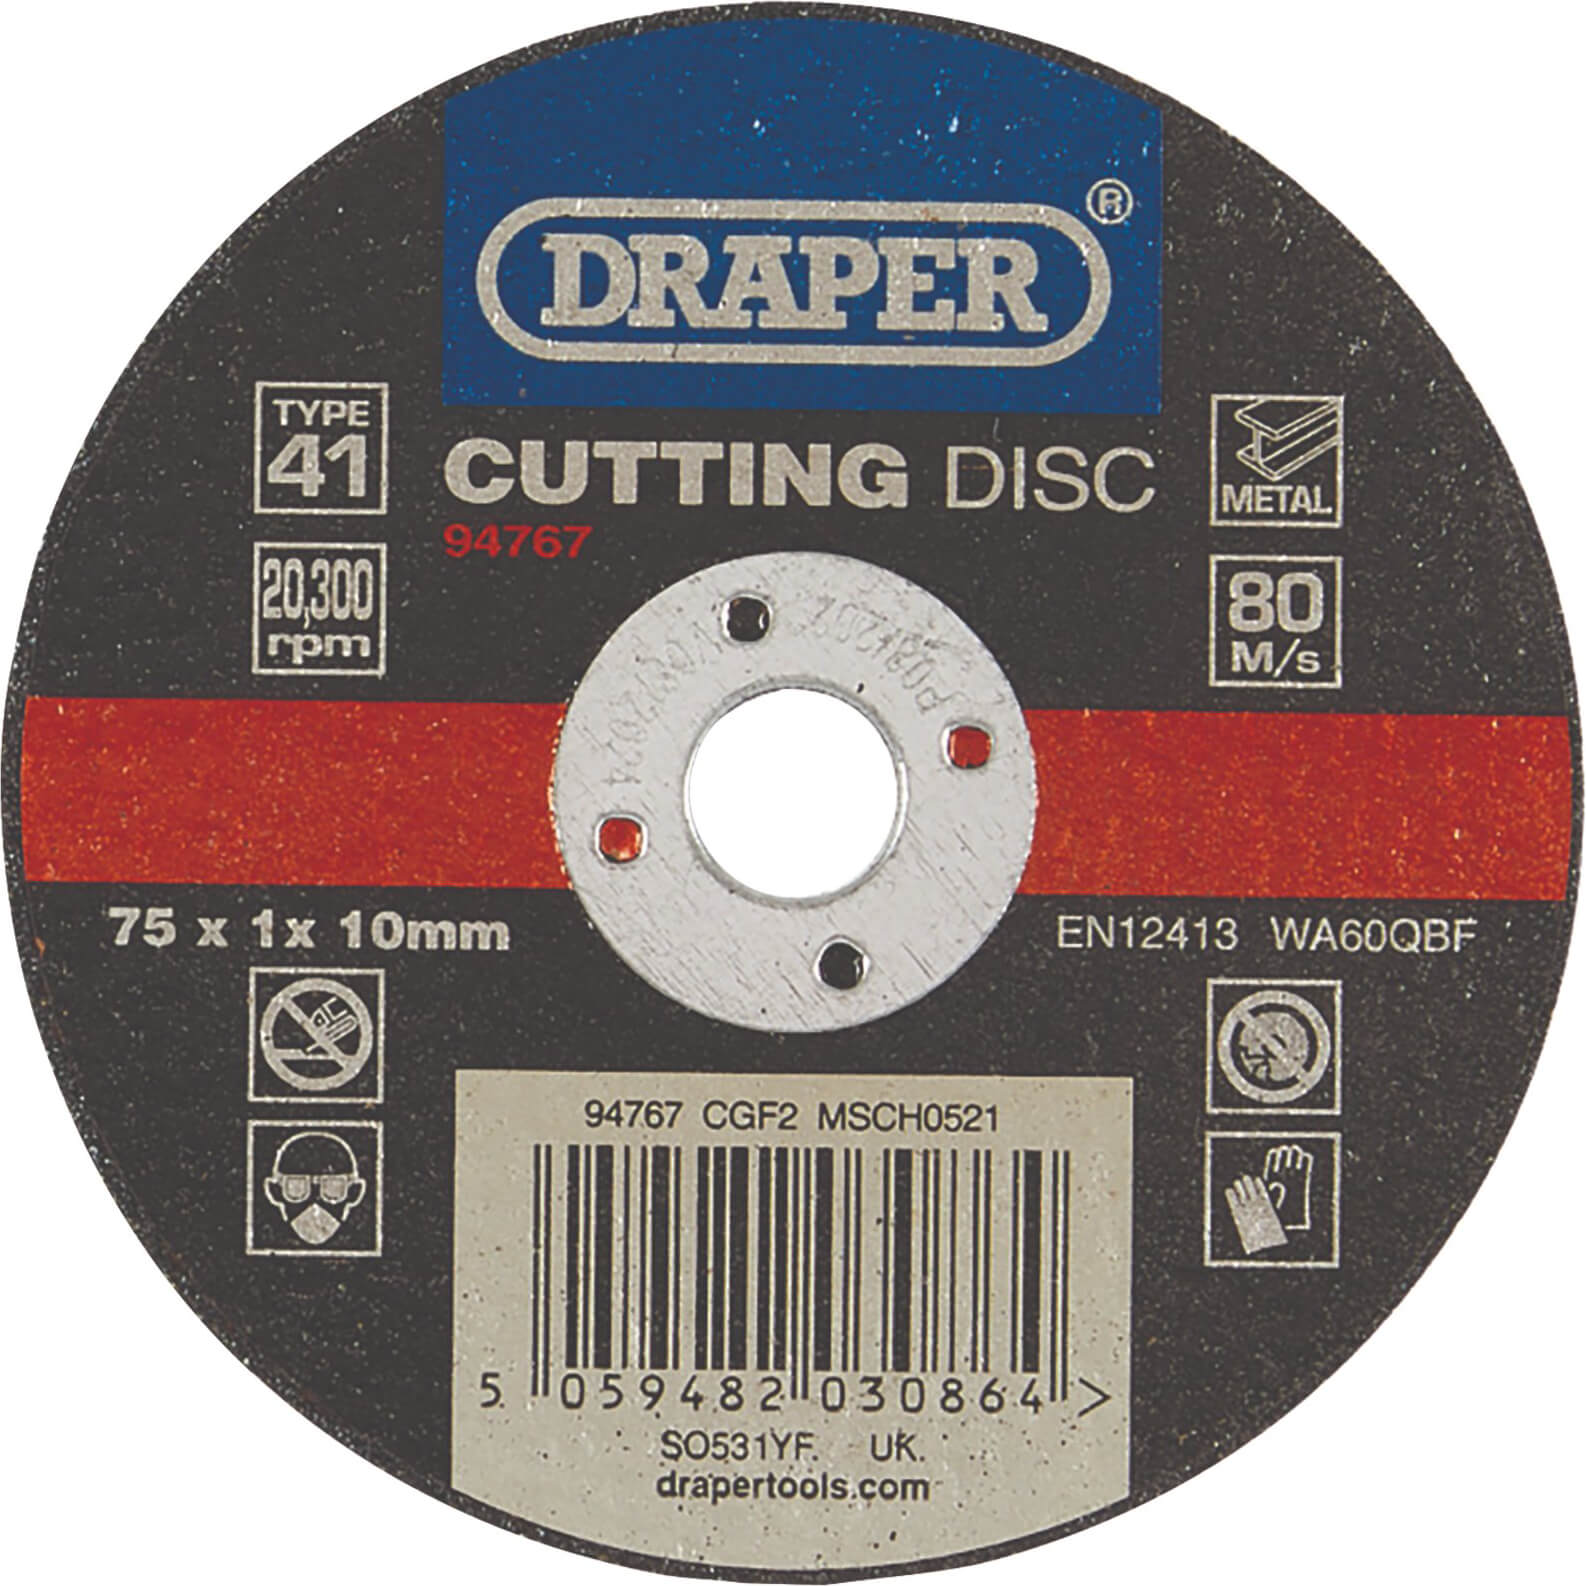 Draper Metal Cutting Disc 75mm 1mm 10mm